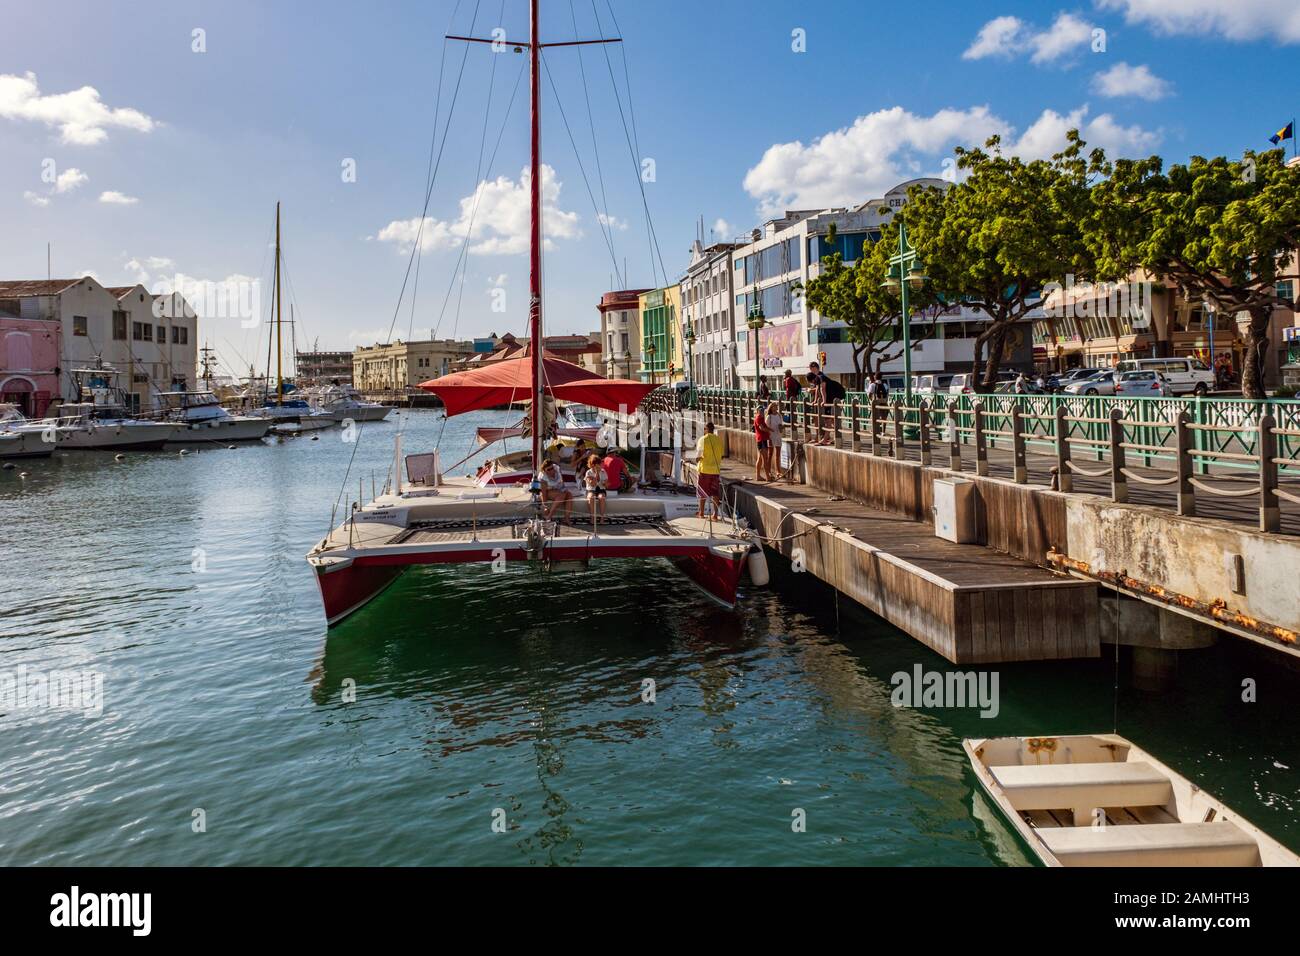 Bateaux amarrés et yachts dans le port de Bridgetown, Barbade, Antilles, Caraïbes Banque D'Images